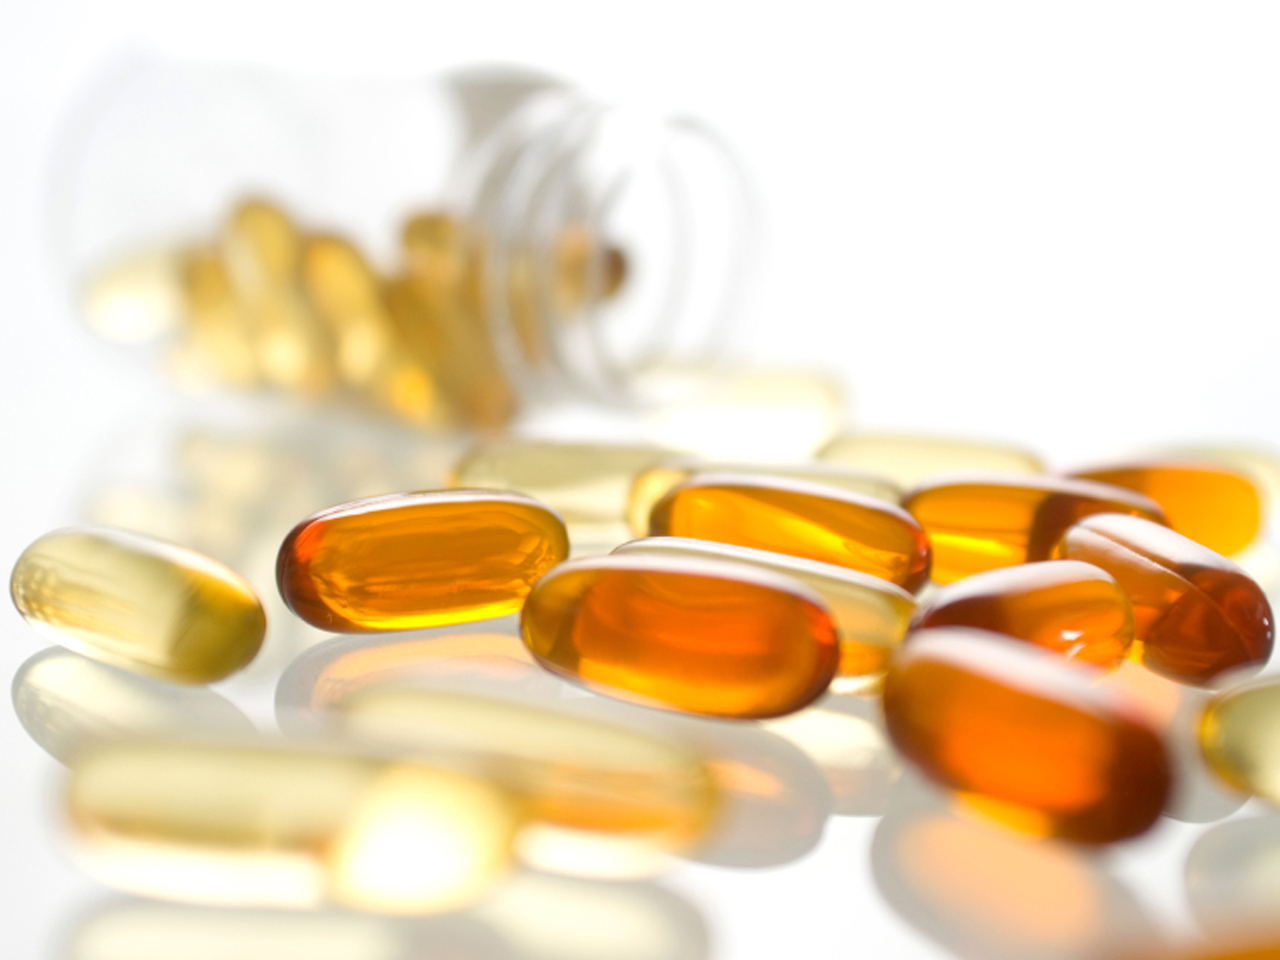 FDA: Anabolic steroids found in vitamin B supplement - CBS News